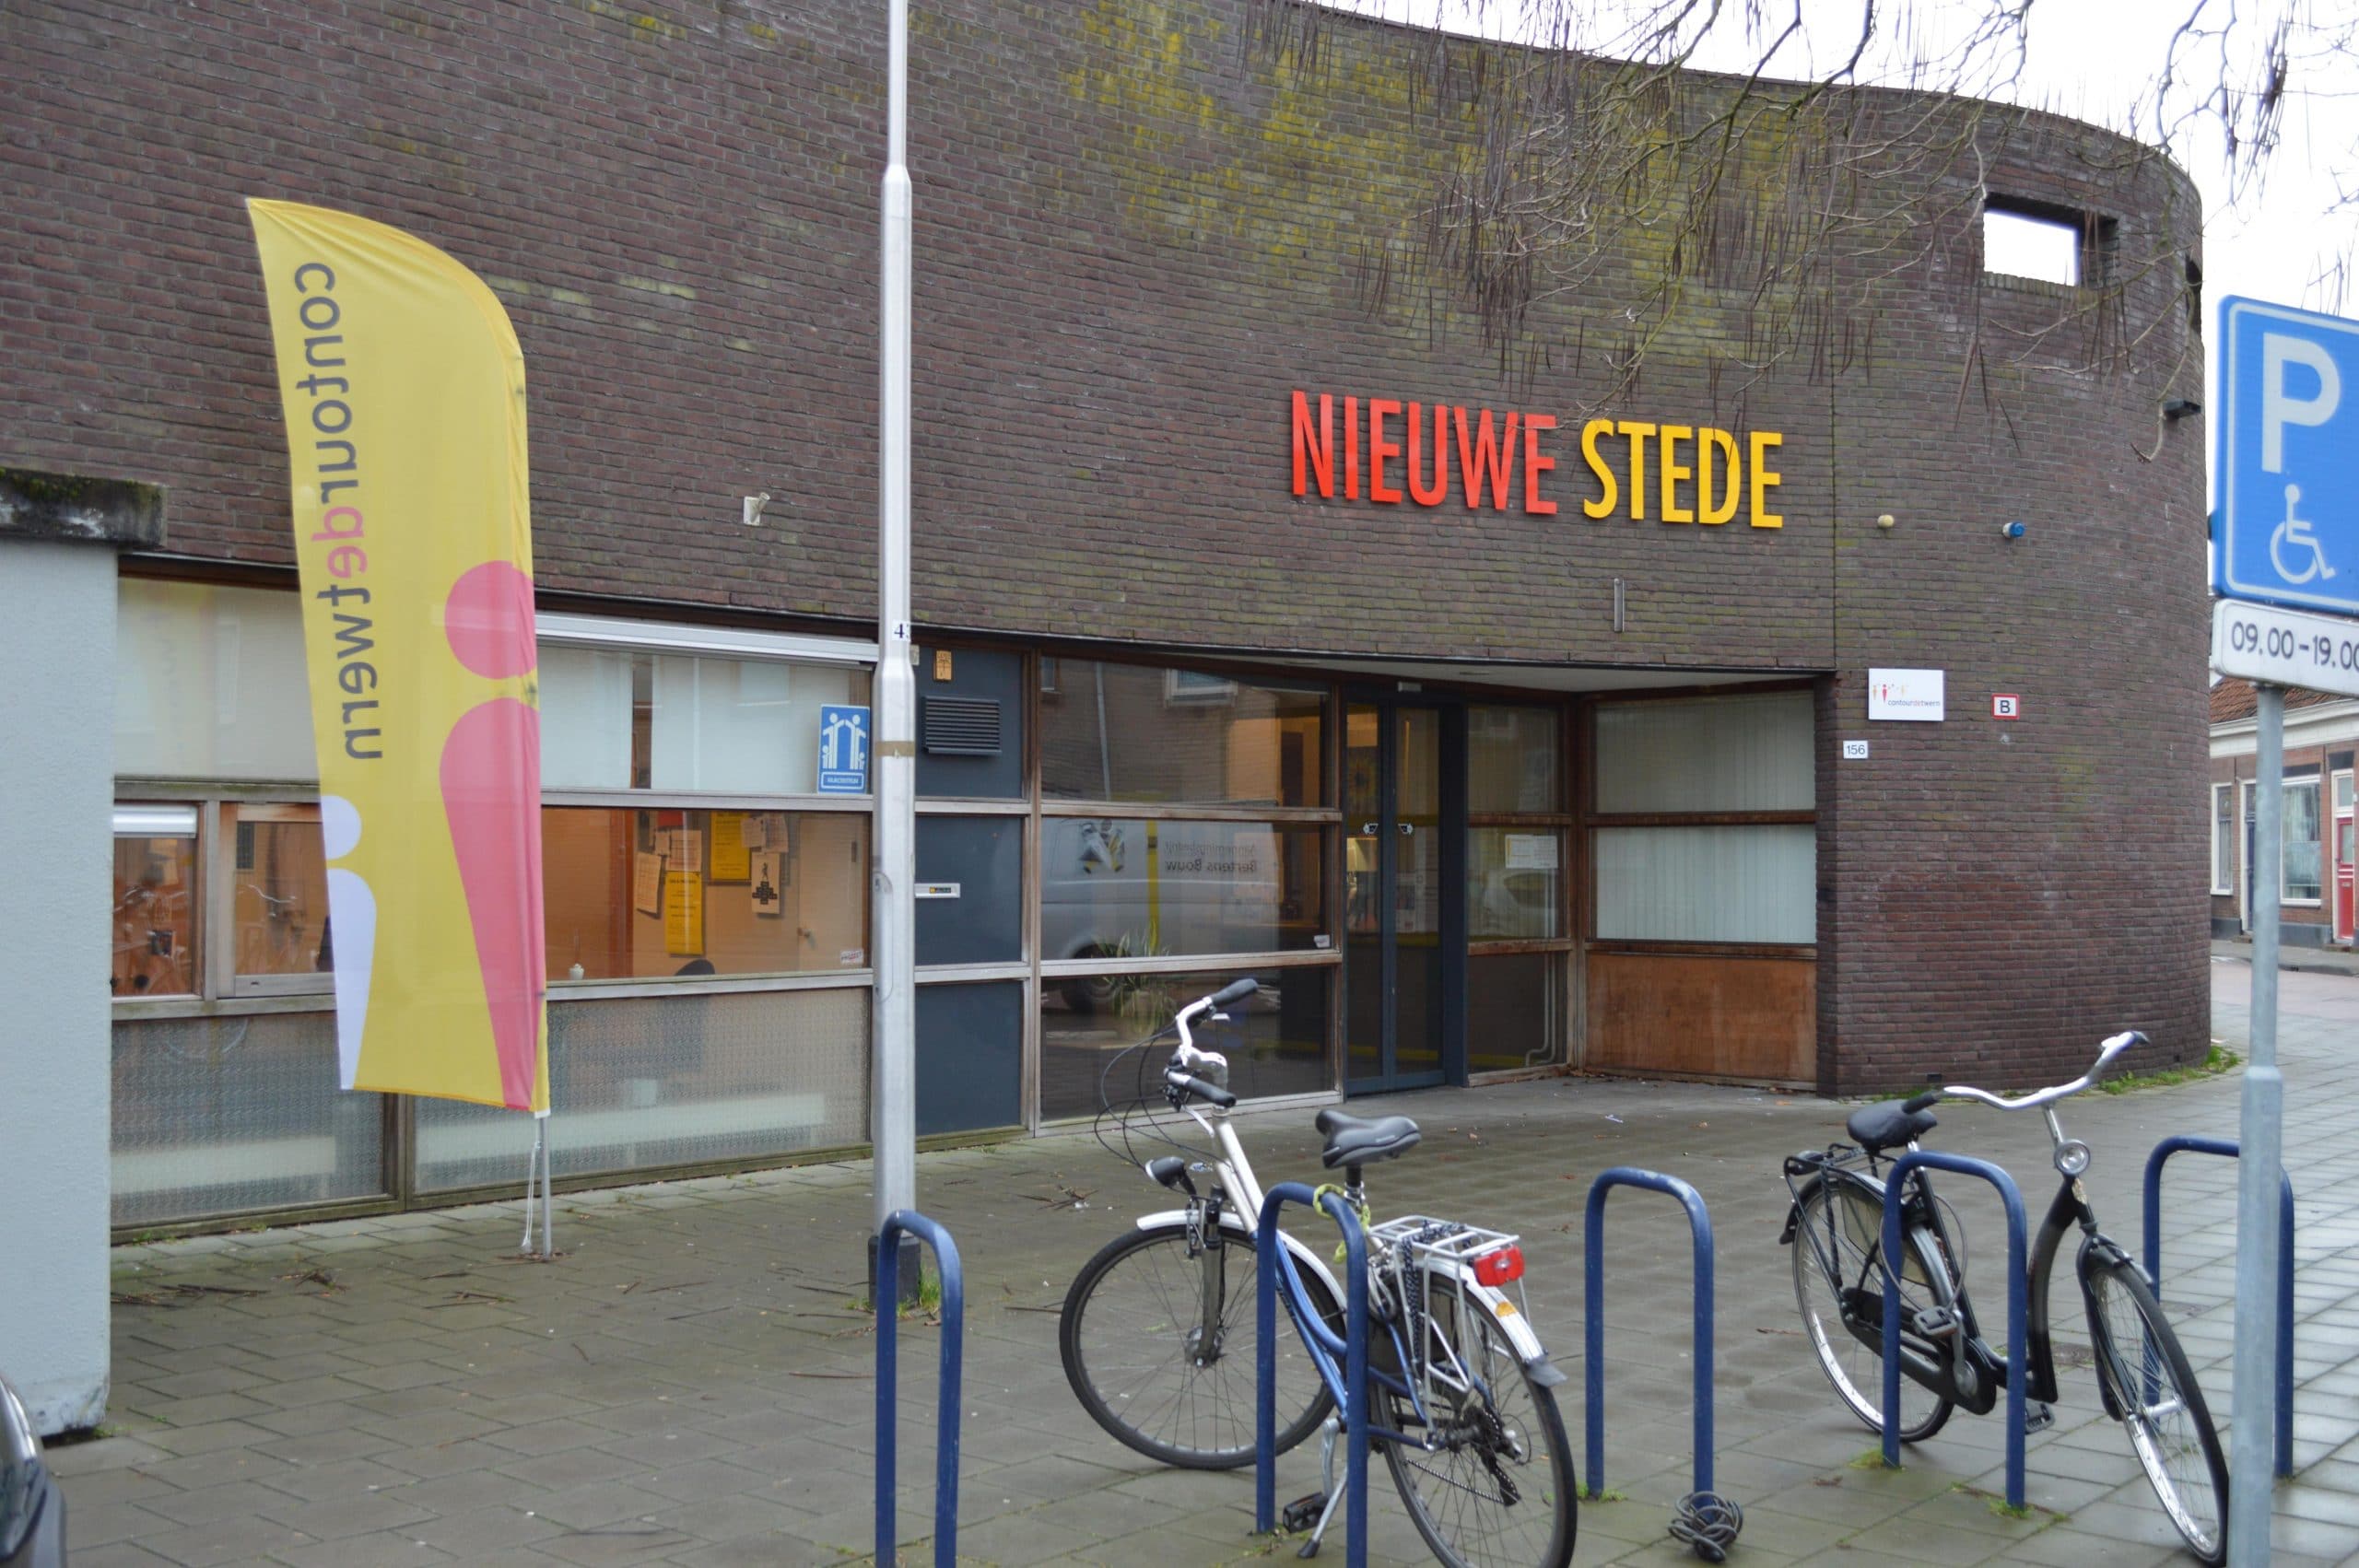 Wijkcentrum De Nieuwe Stede in Tilburg